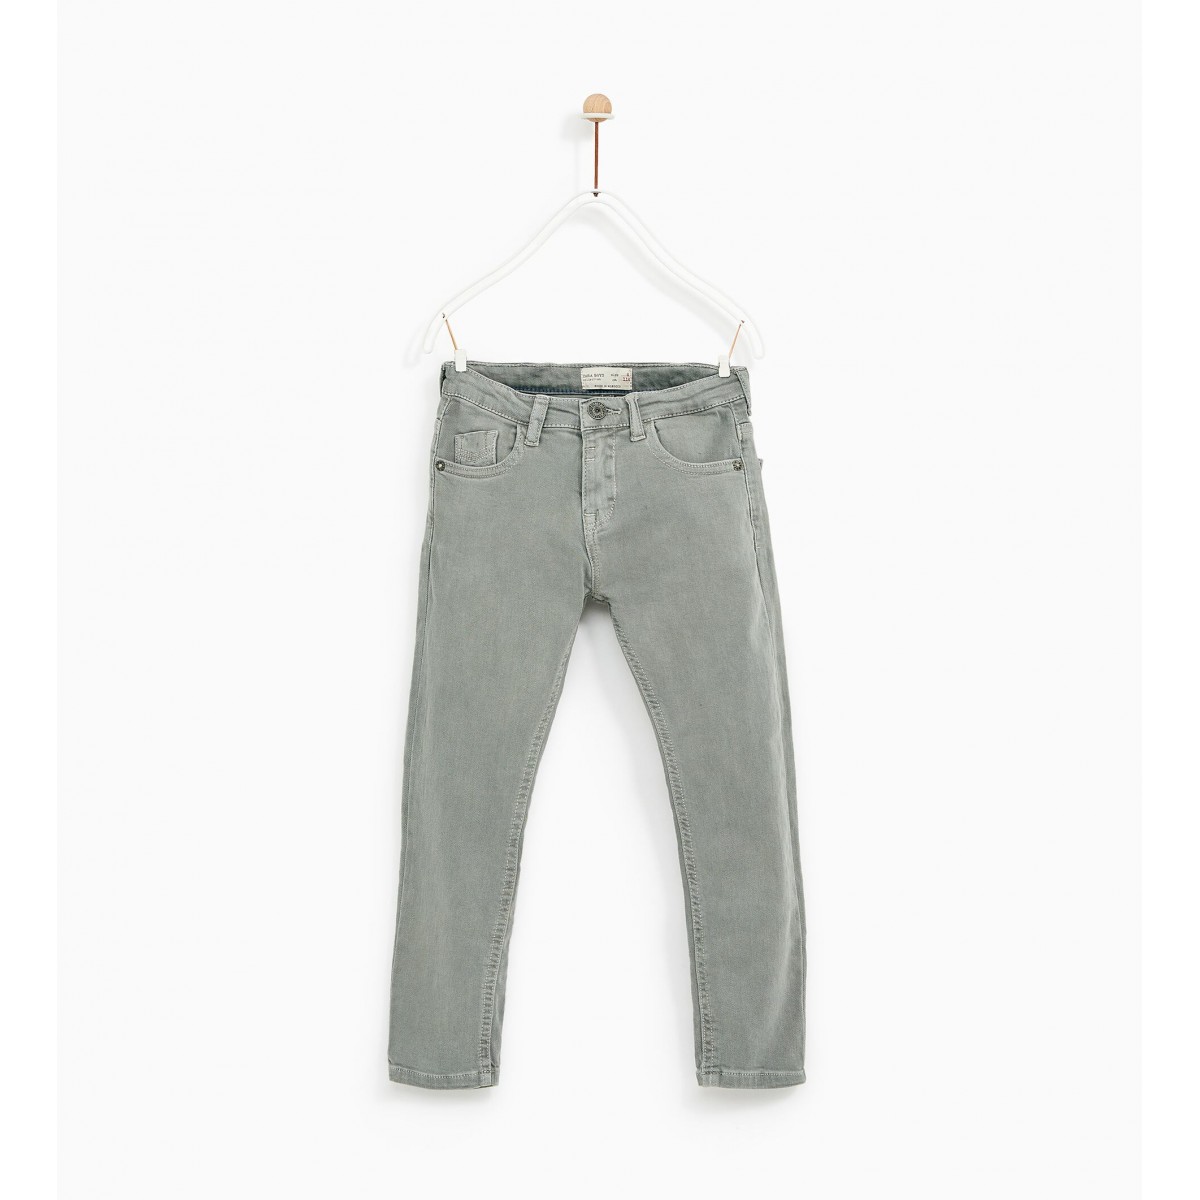 Zara Twill Skinny Jeans